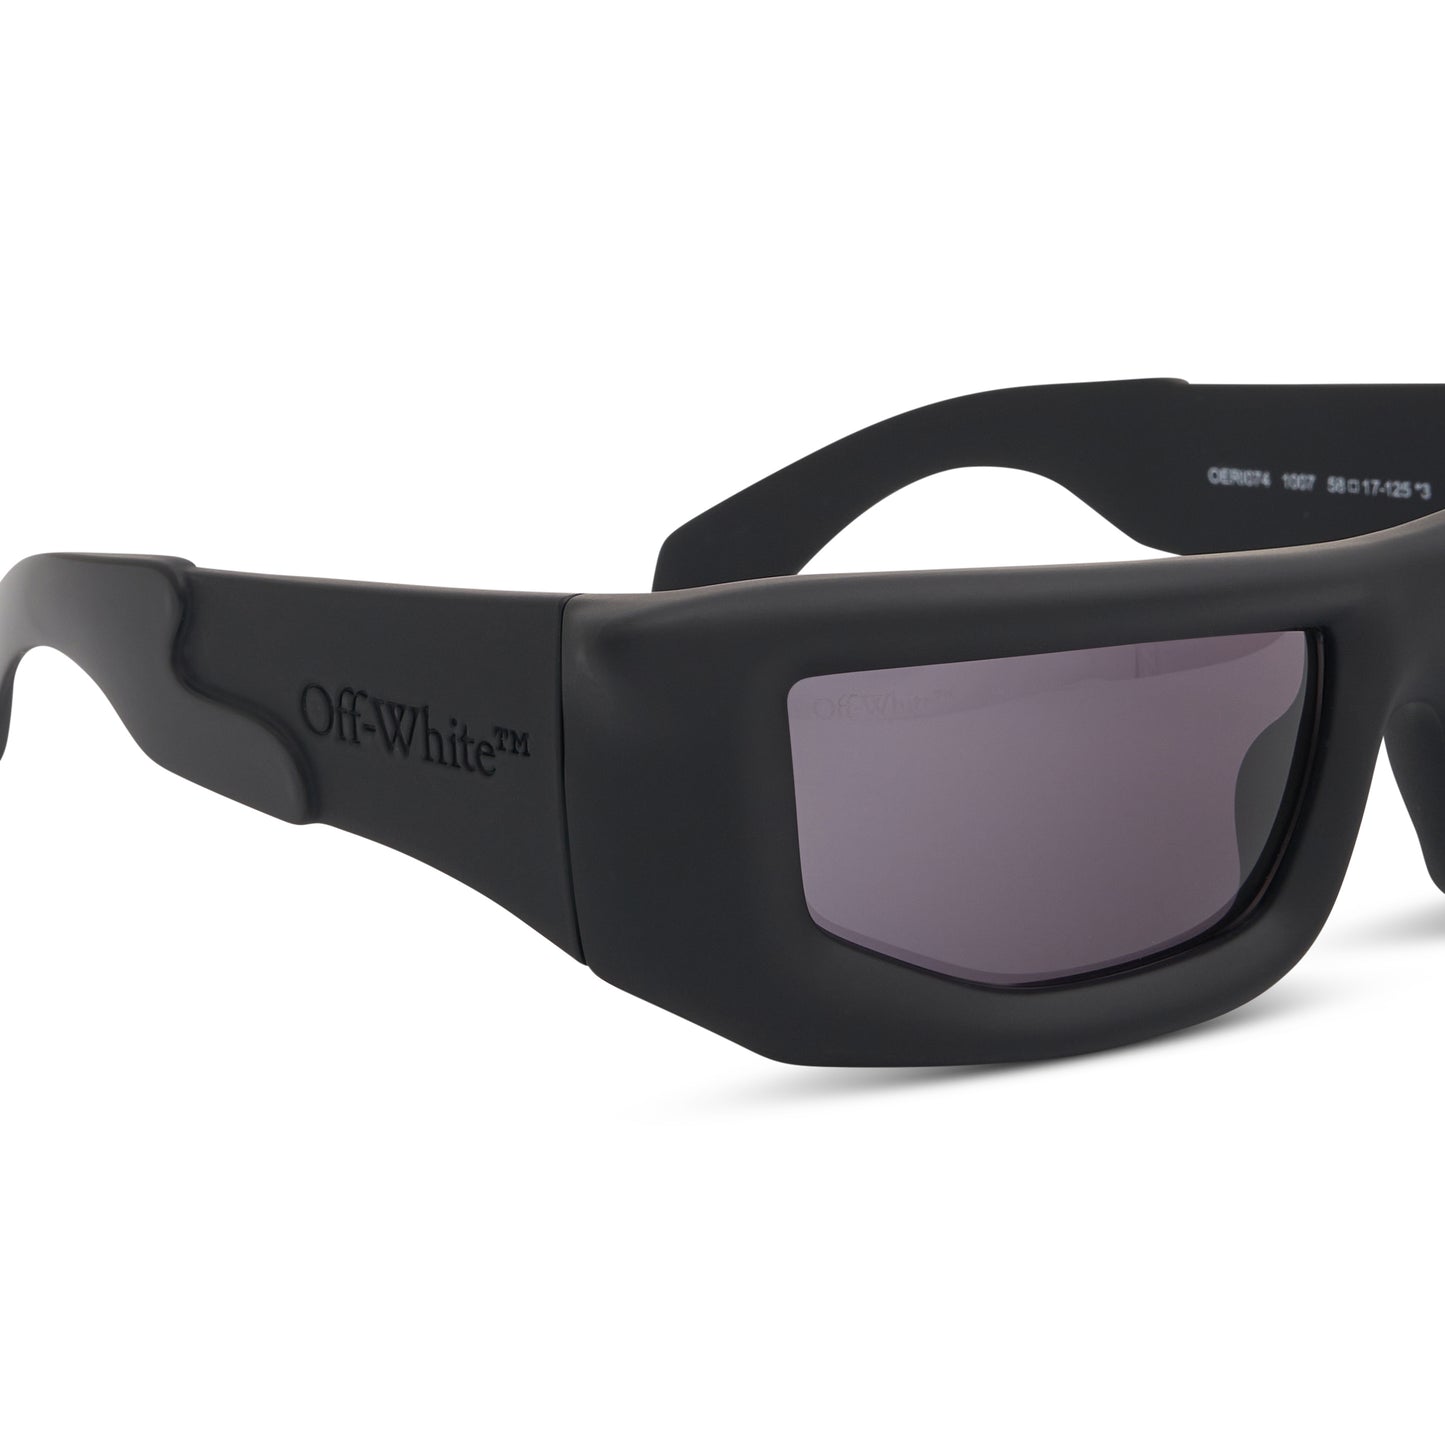 Volcanite Sunglasses in Black/Dark Grey